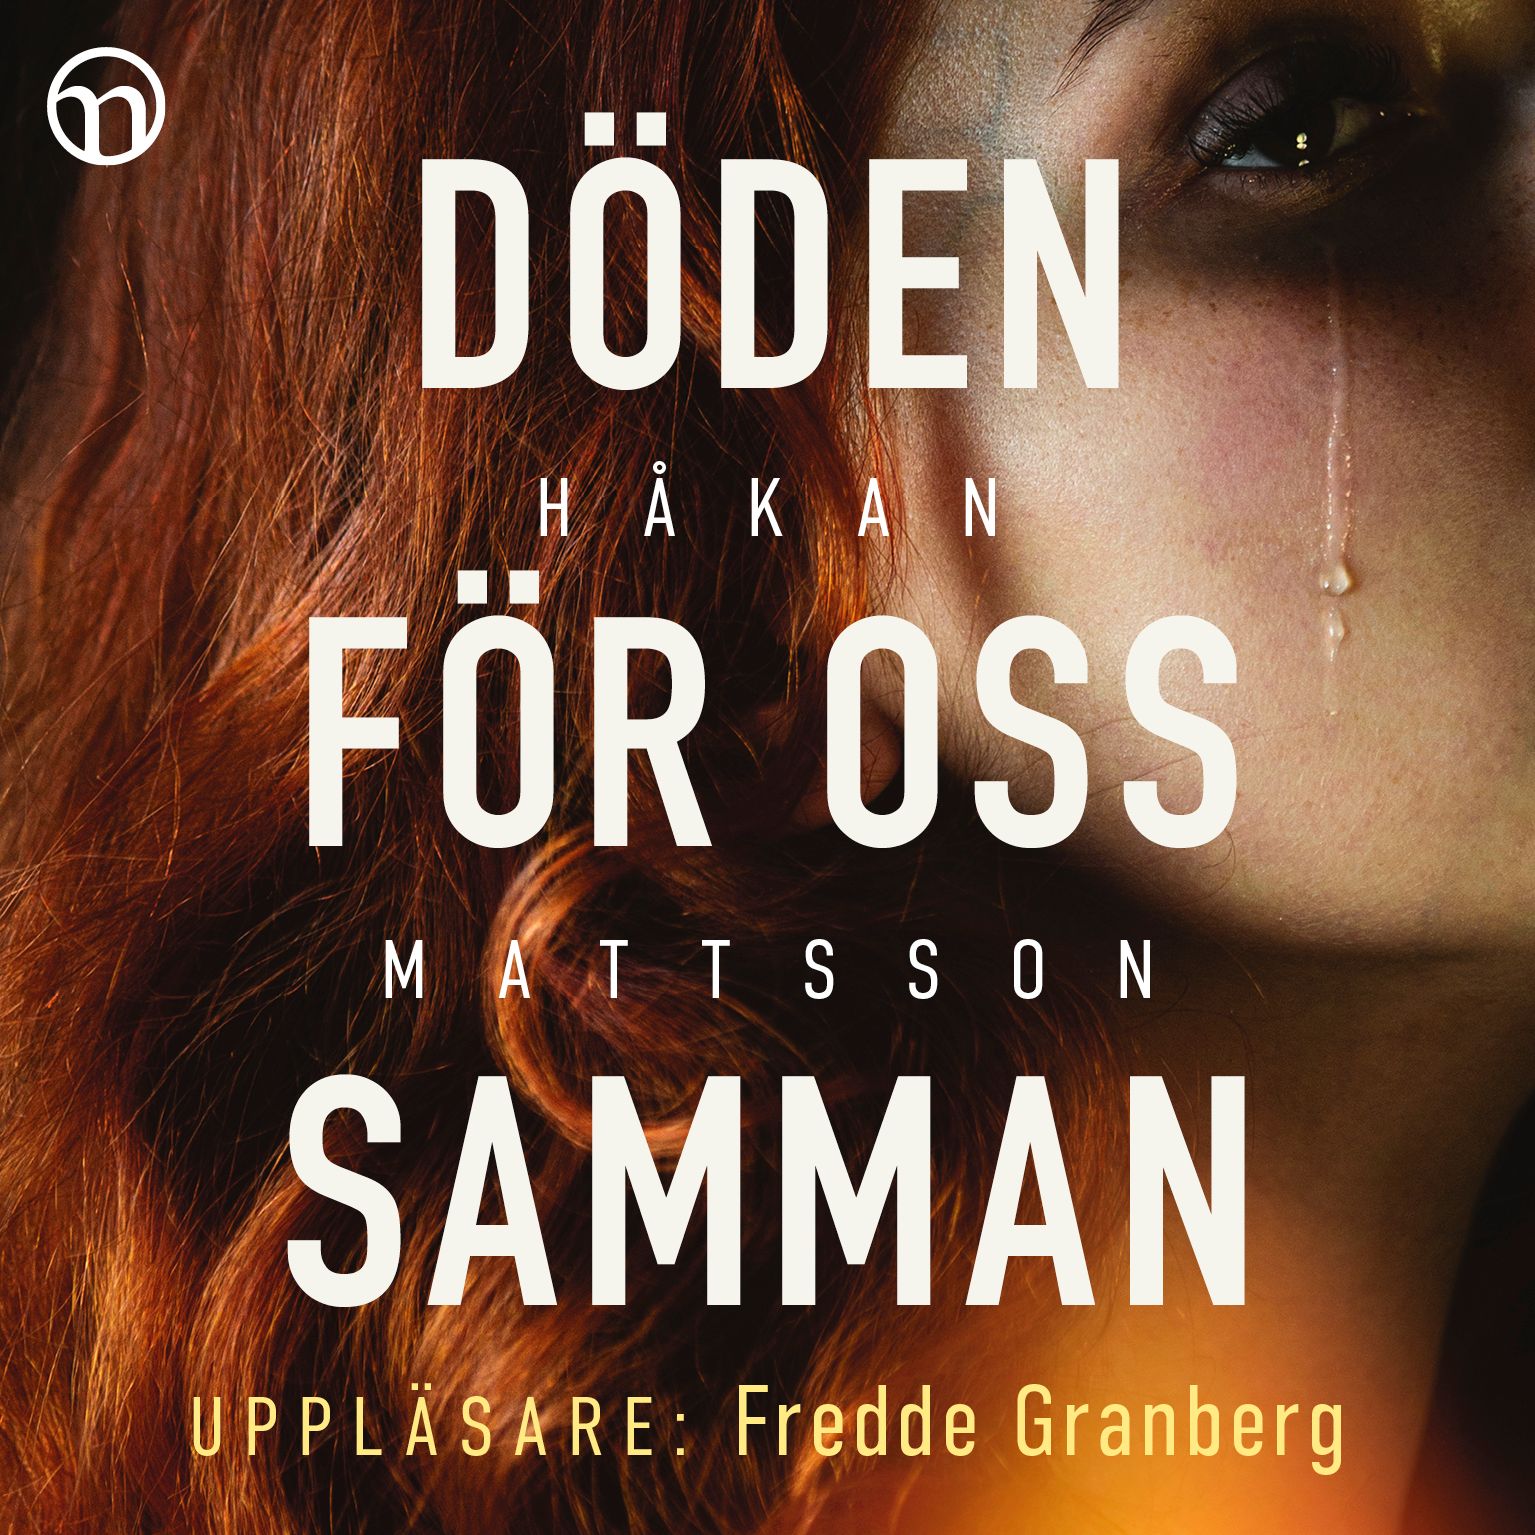 Döden för oss samman, ljudbok av Håkan Mattsson